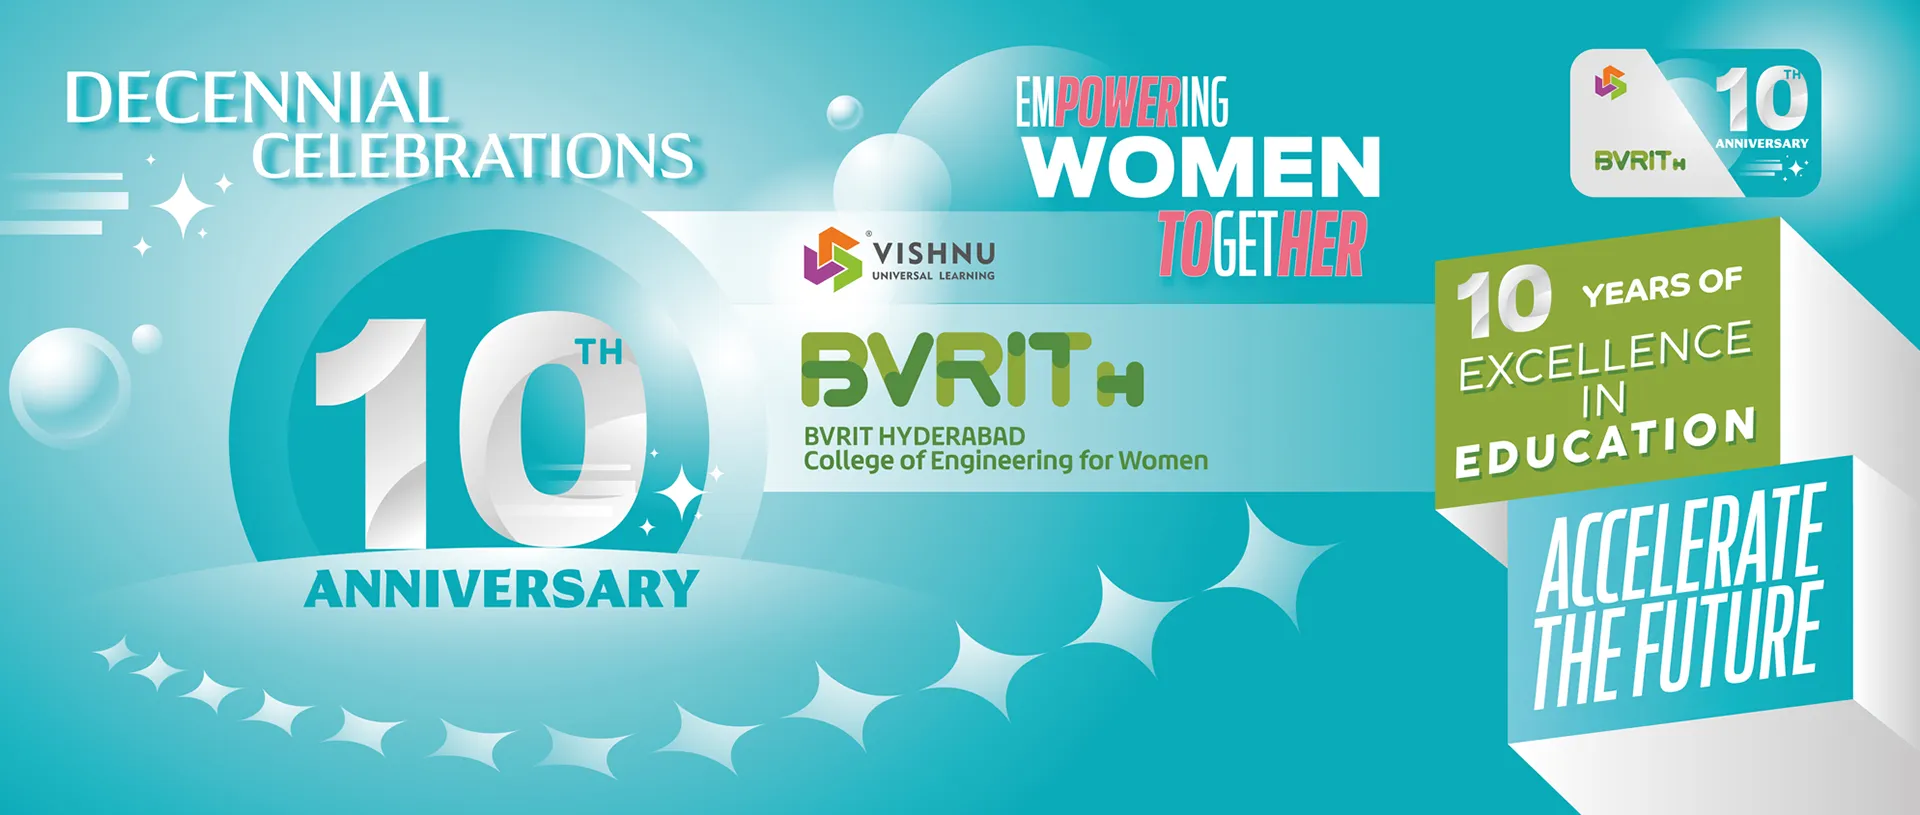 home-slider-2-decennial-celebrations-bvrit-hyderabad-engineering-women-college